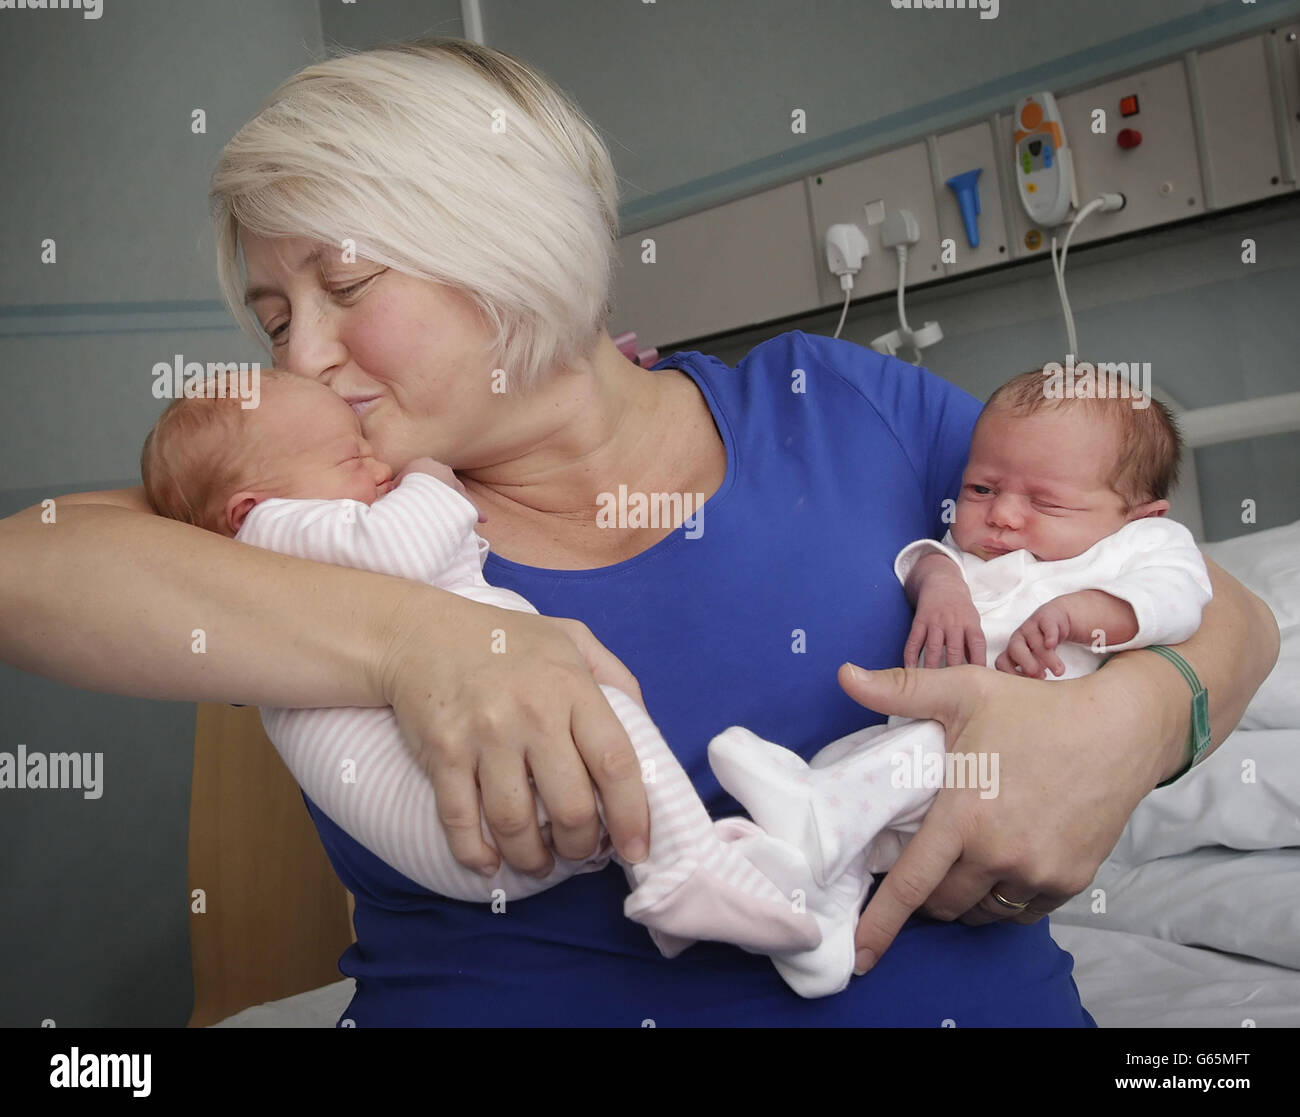 ÜBERTRAGUNG DER BILDUNTERSCHRIFT MIT EMBARGO ENTFERNT. Mutter Karen Rodger, die sich den Widrigkeiten widersetzte, indem sie mit ihrem dritten Zwillingssatz schwanger wurde, wird im Southern General Hospital in Glasgow mit ihren Neugeborenen Rowan (links) und Isla (rechts) abgebildet. Stockfoto